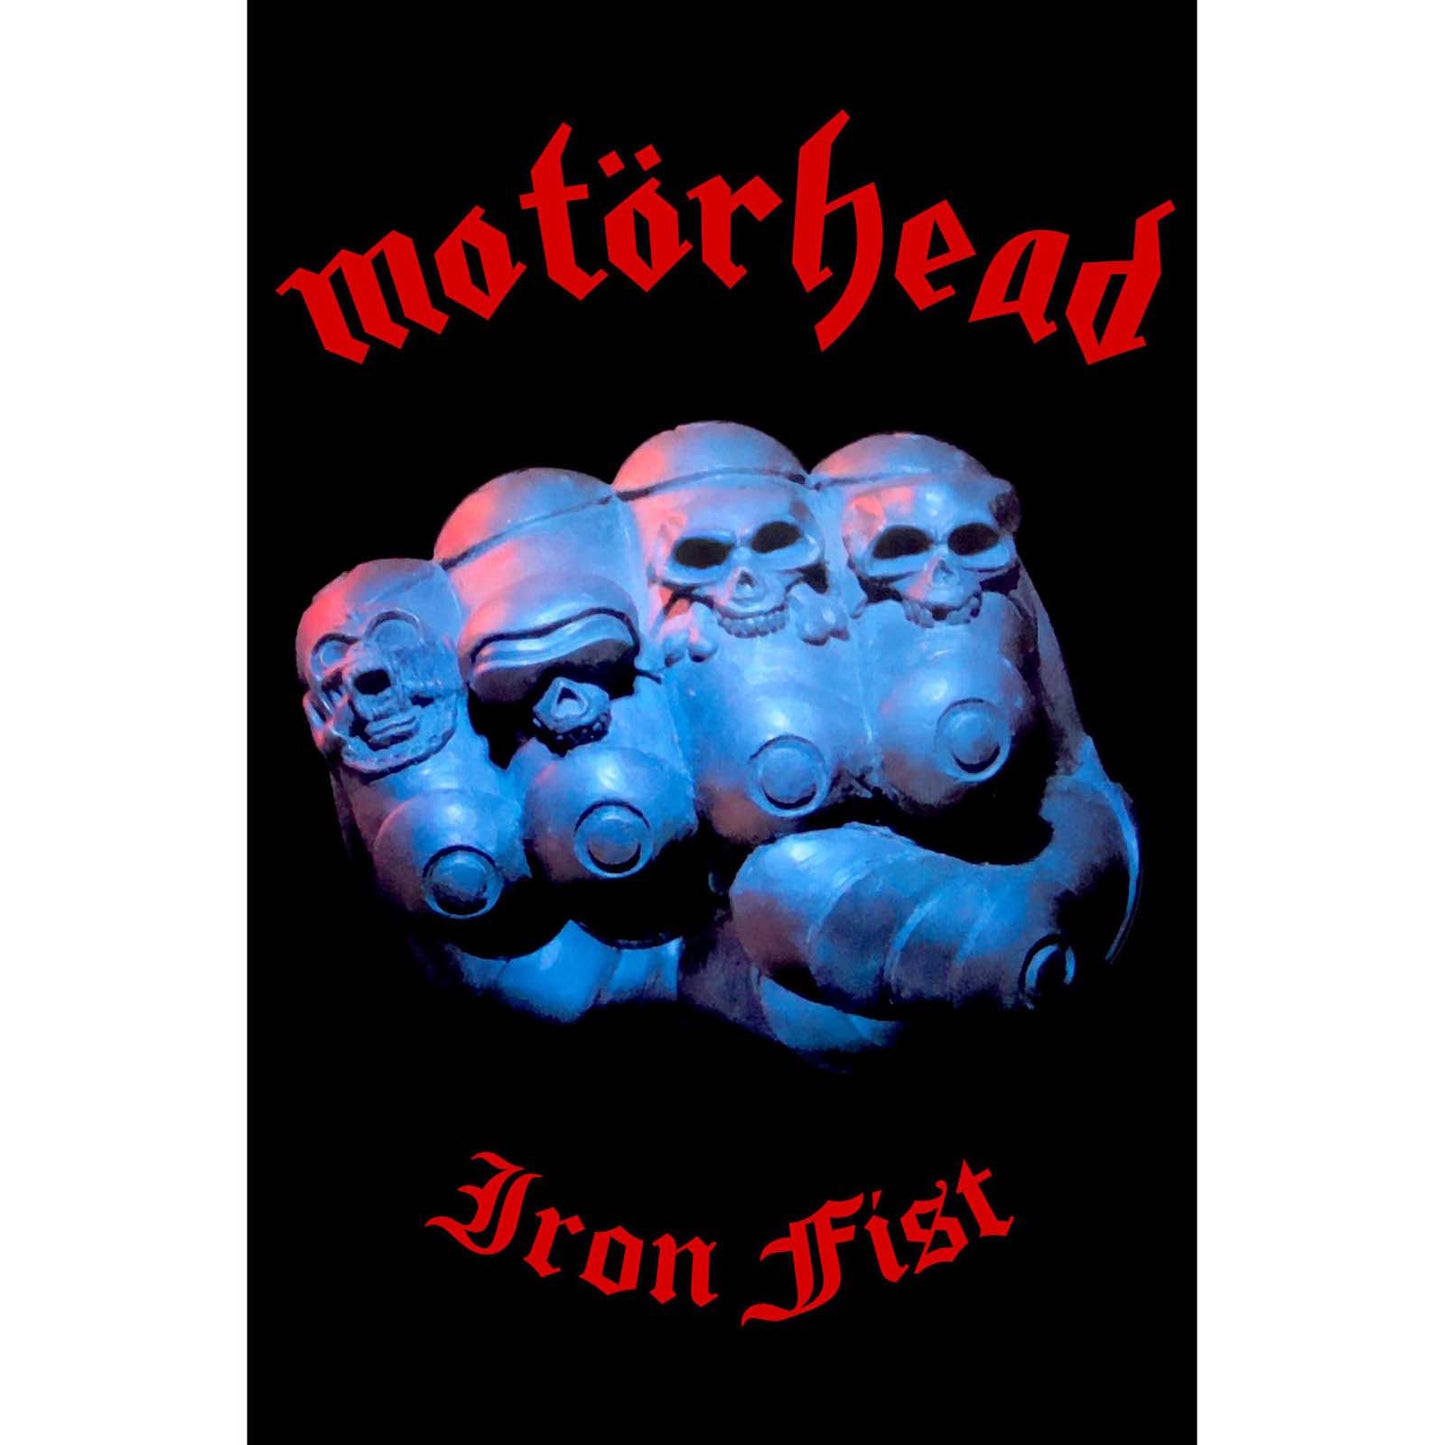 Motorhead Textile Poster: Iron Fist